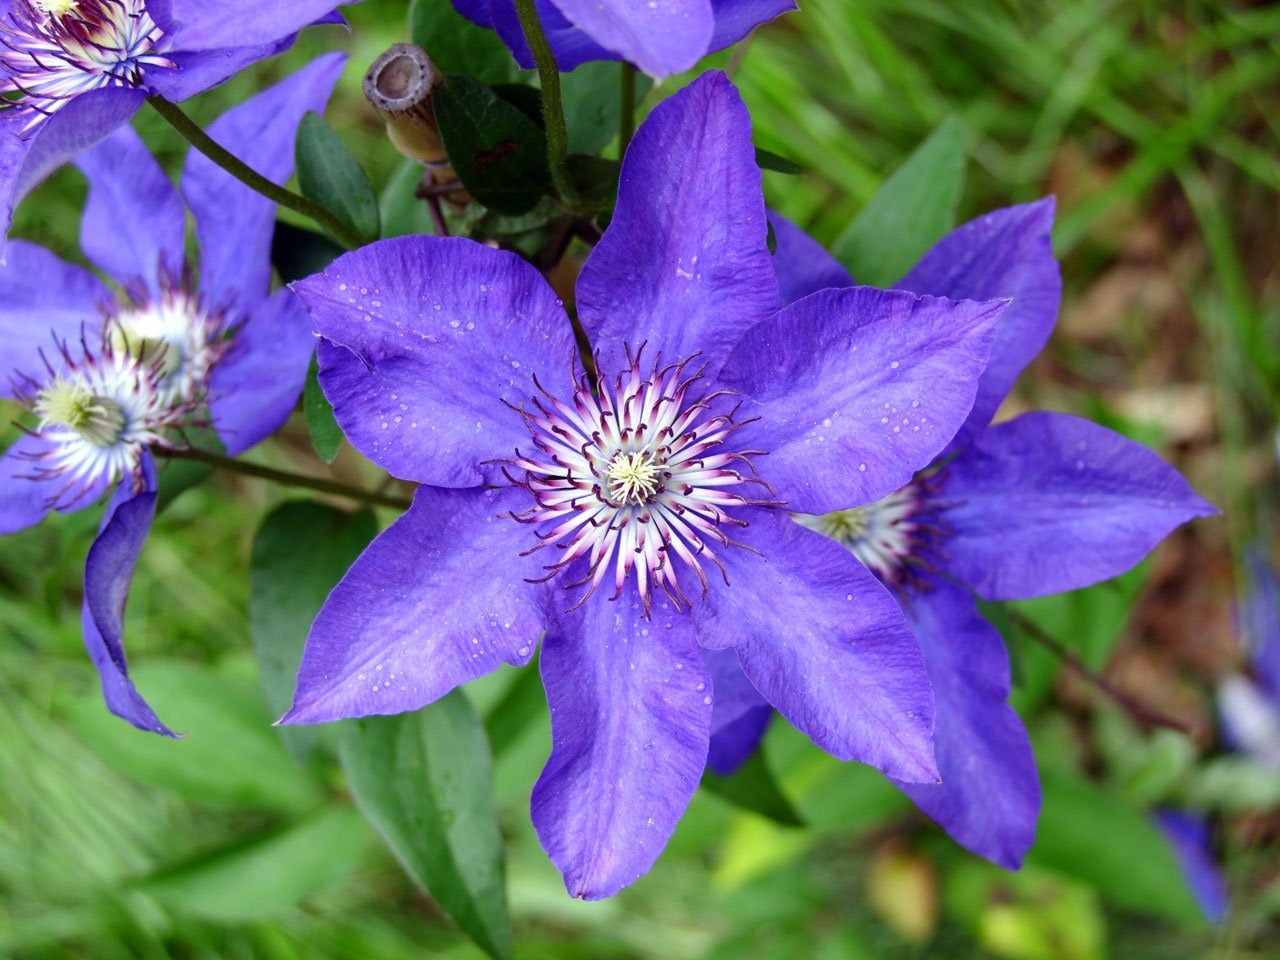 purple 6 petaled flower